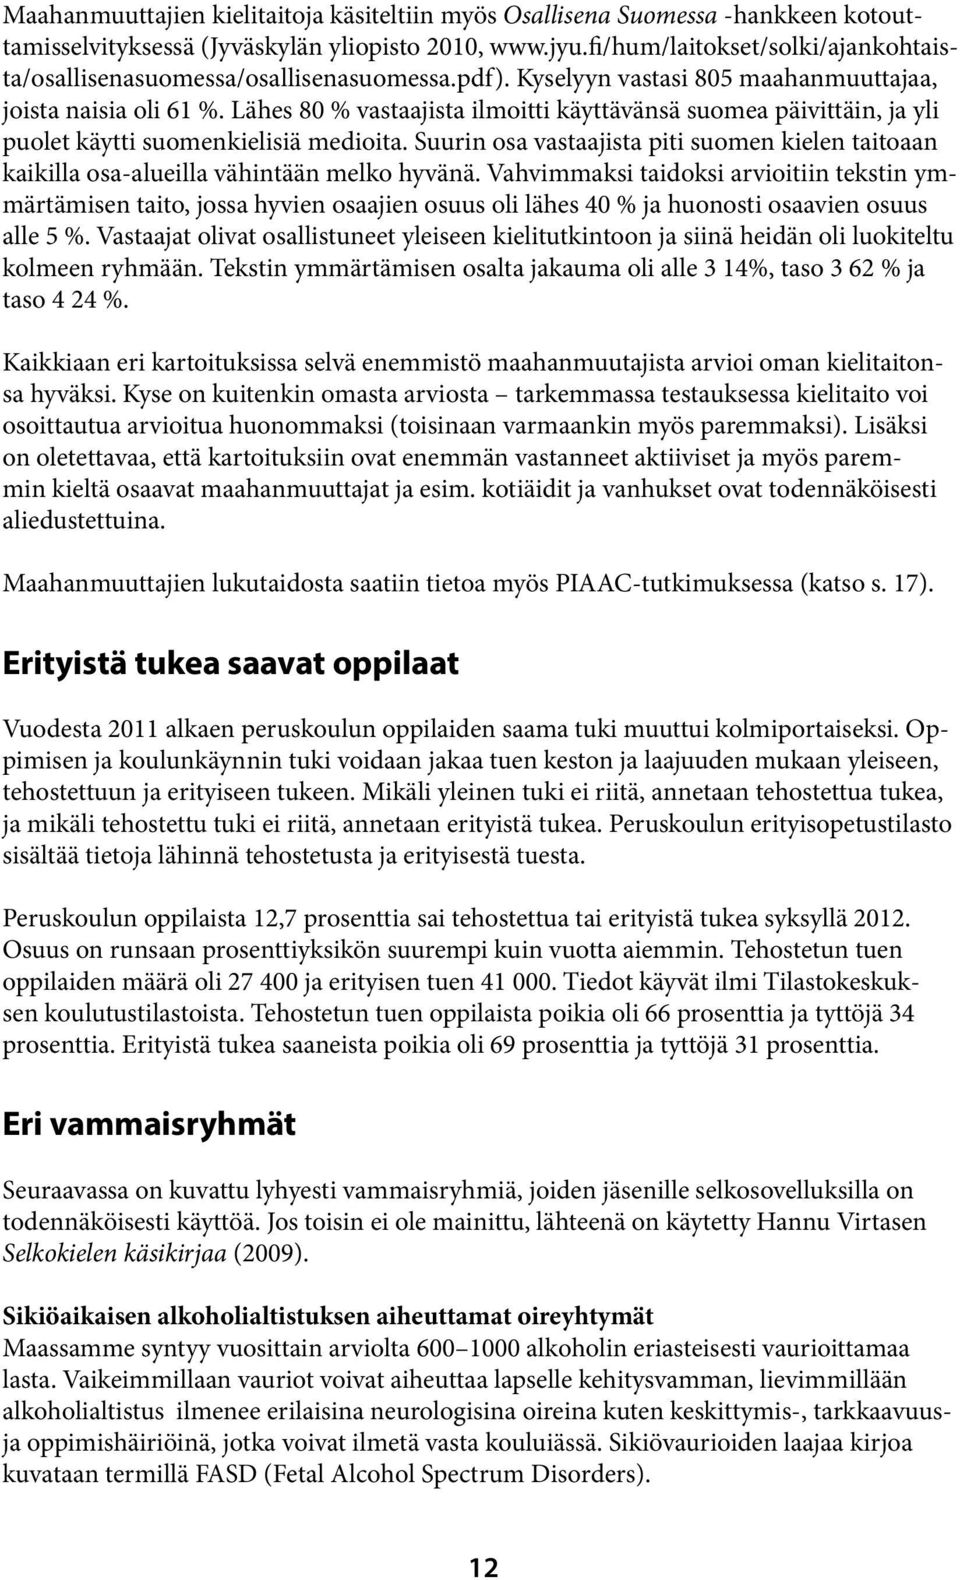 Lähes 80 % vastaajista ilmoitti käyttävänsä suomea päivittäin, ja yli puolet käytti suomenkielisiä medioita.